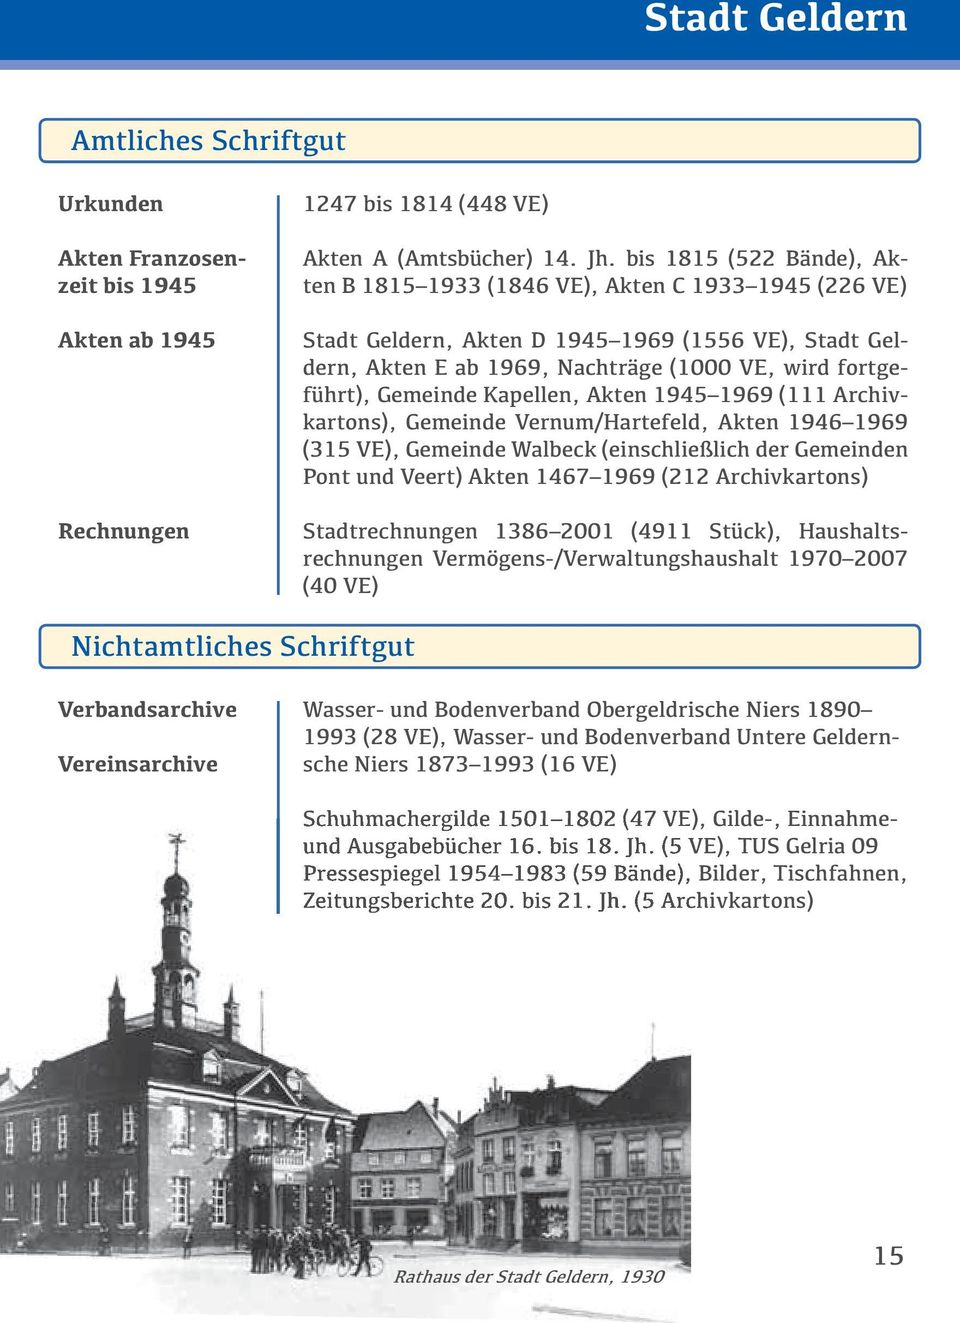 Gemeinde Kapellen, Akten 1945 1969 (111 Archivkartons), Gemeinde Vernum/Hartefeld, Akten 1946 1969 (315 VE), Gemeinde Walbeck (einschließlich der Gemeinden Pont und Veert) Akten 1467 1969 (212